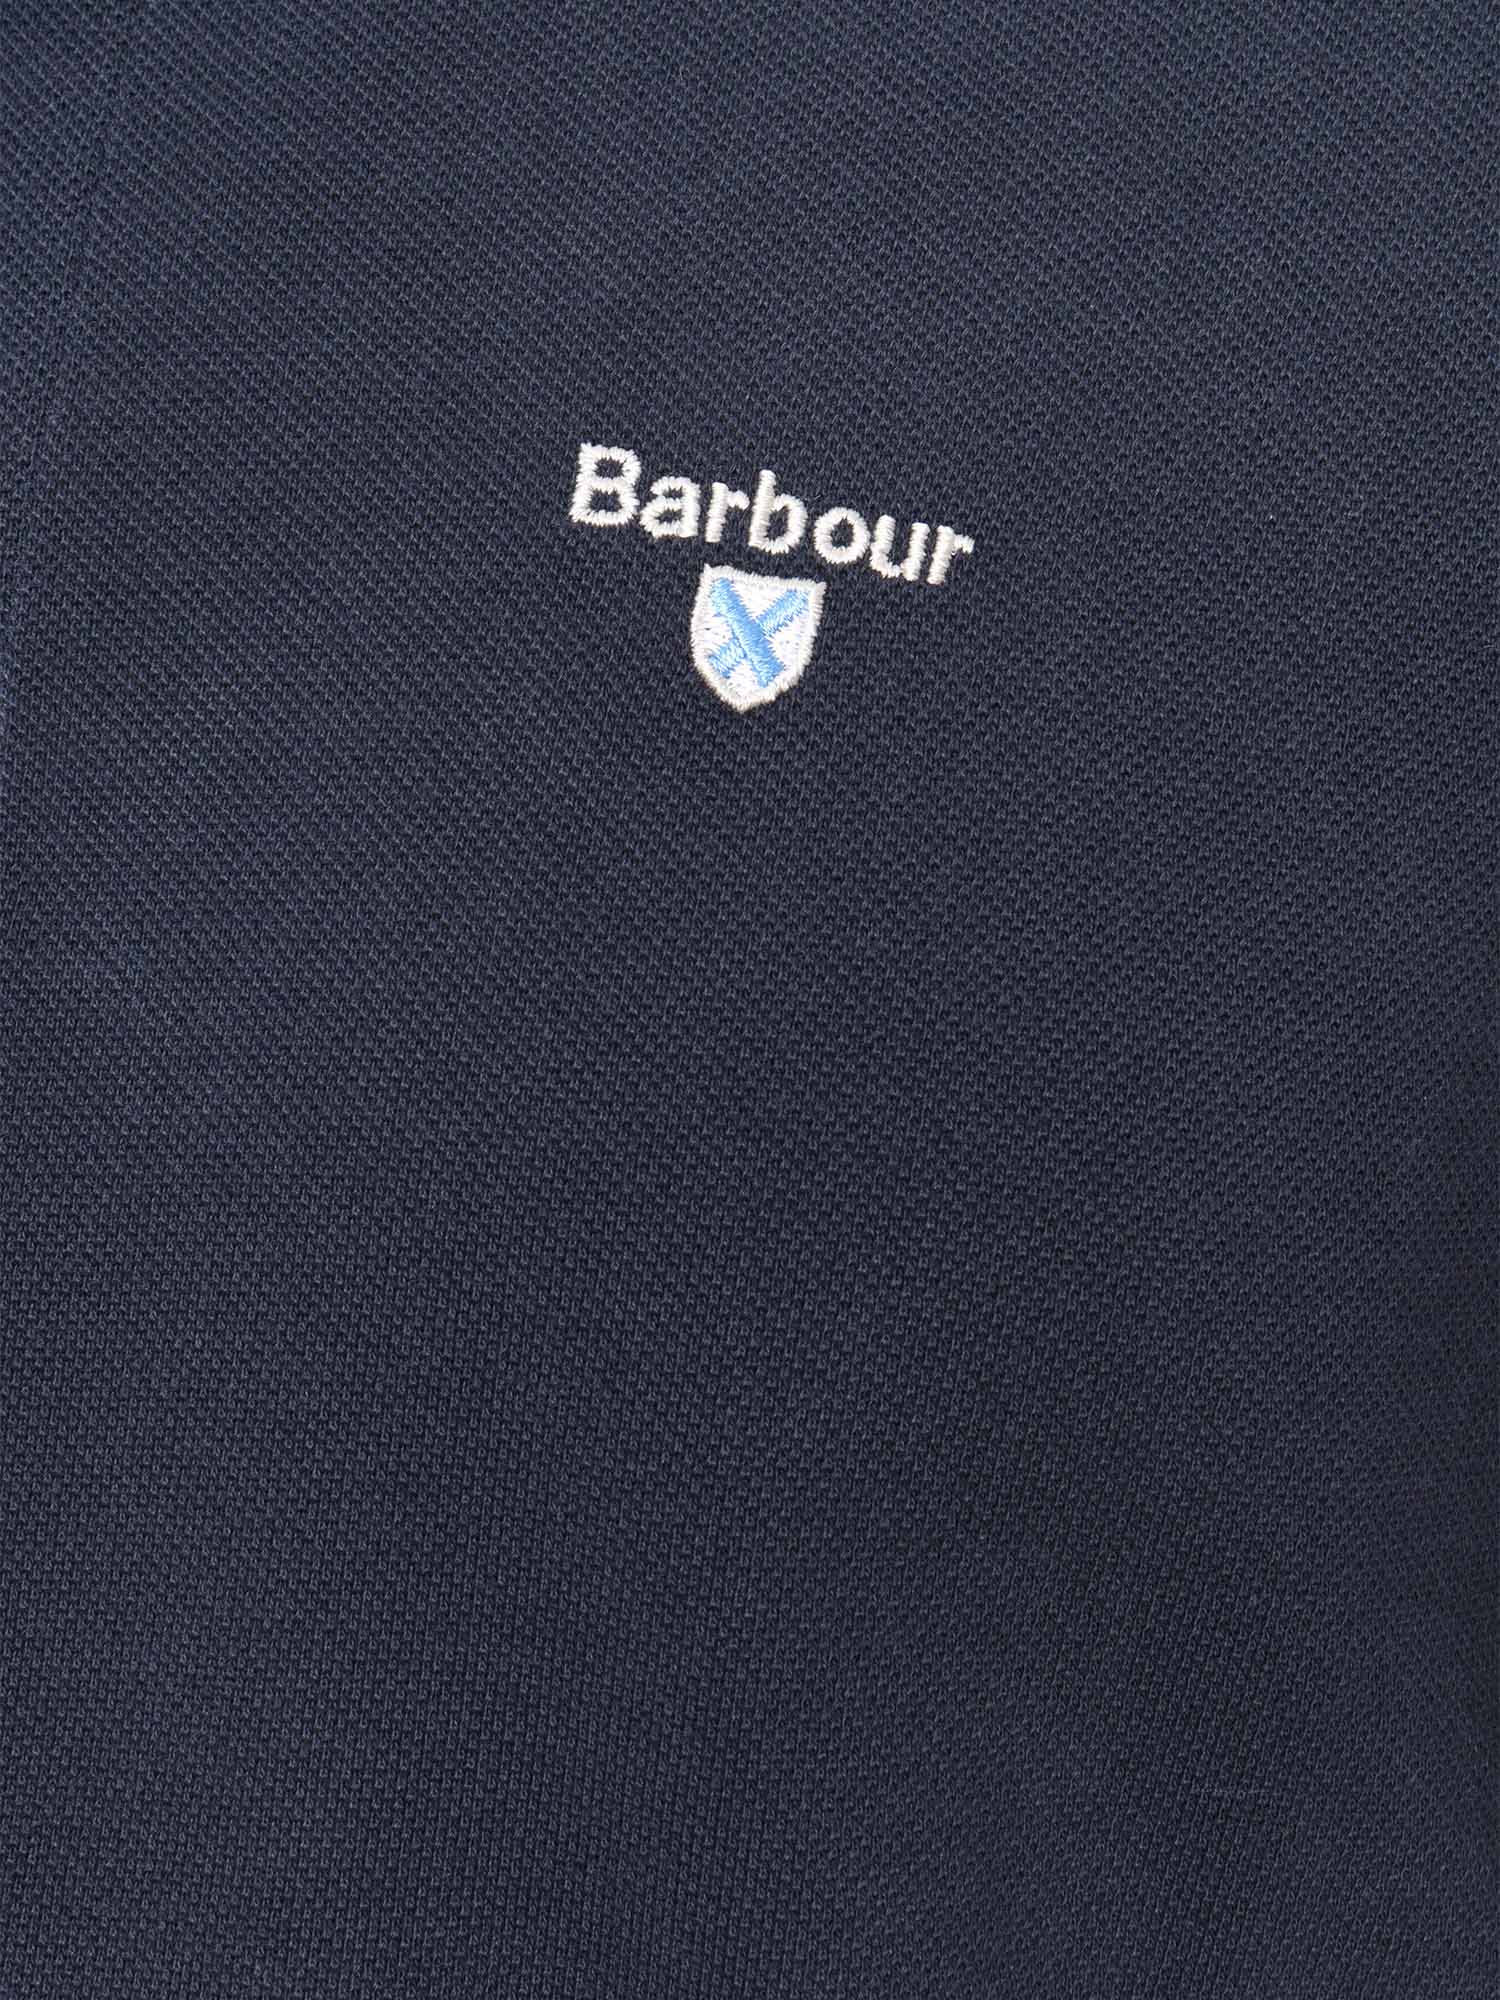 Shop Barbour Blue Polo